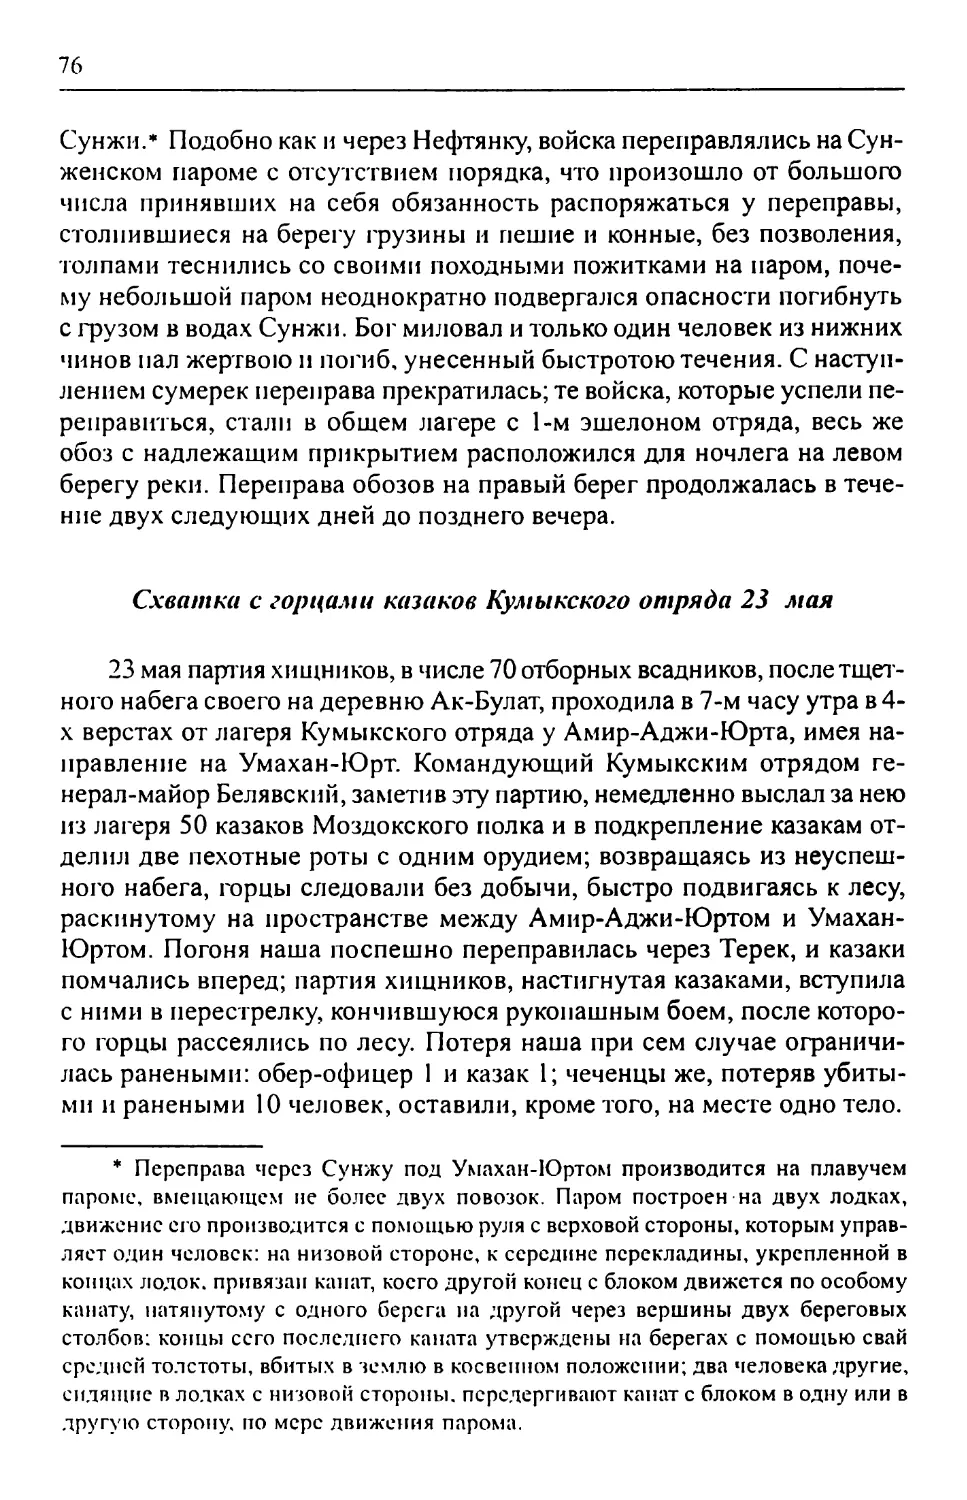 Схватка с горцами казаков Кумыкского отряда 23 мая